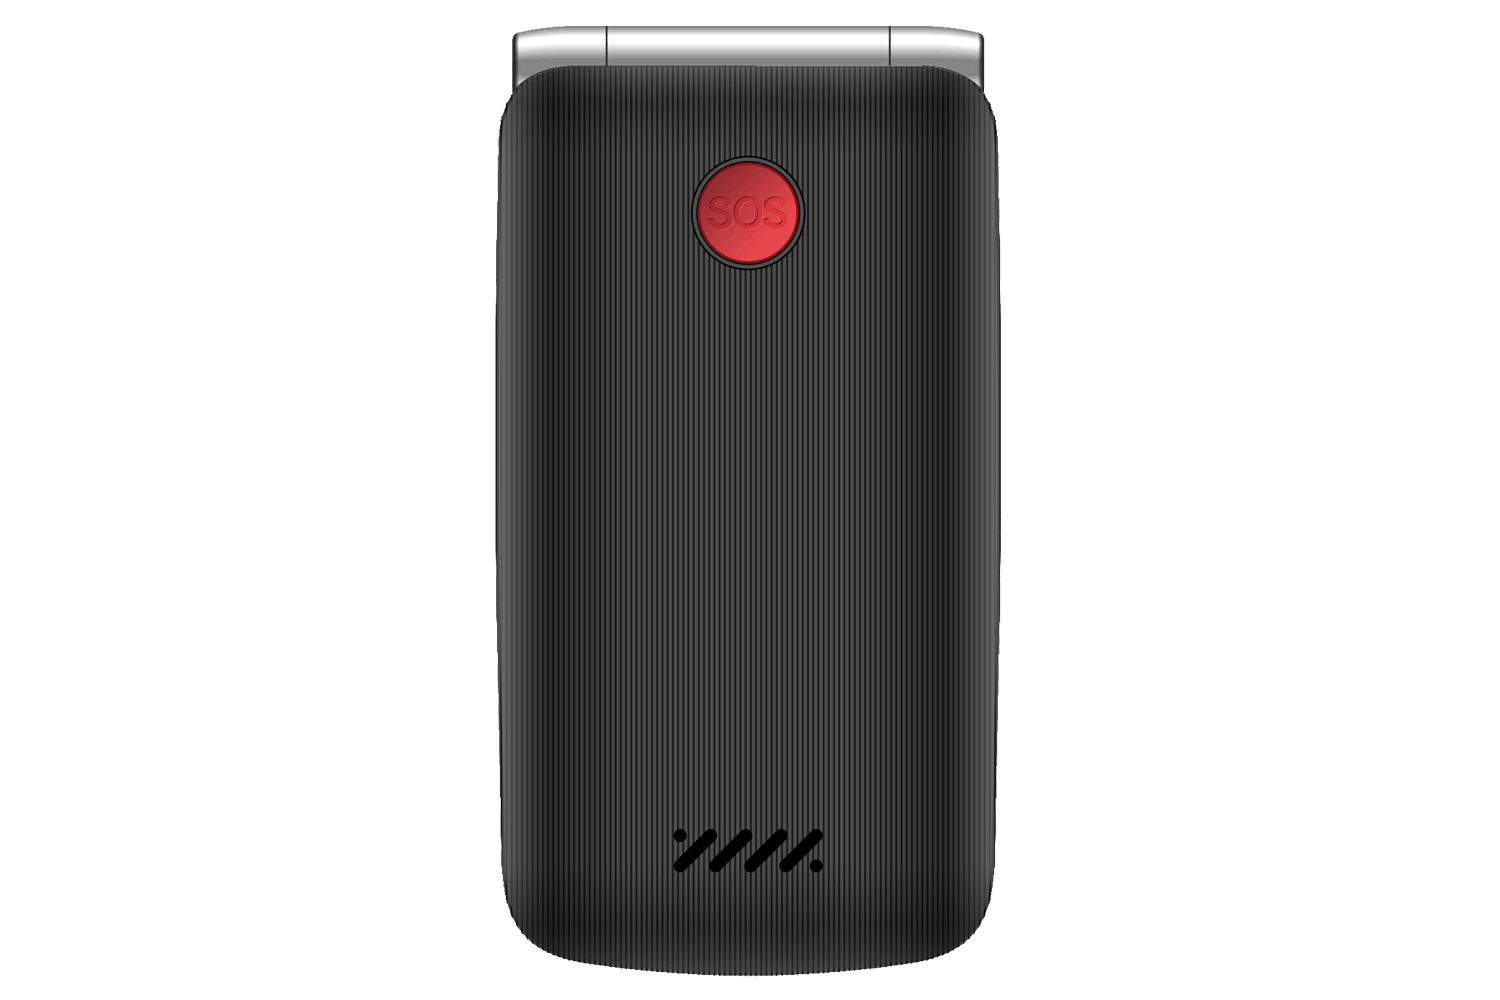 Evolveo EasyPhone FG s nabíjecím stojánkem, černá